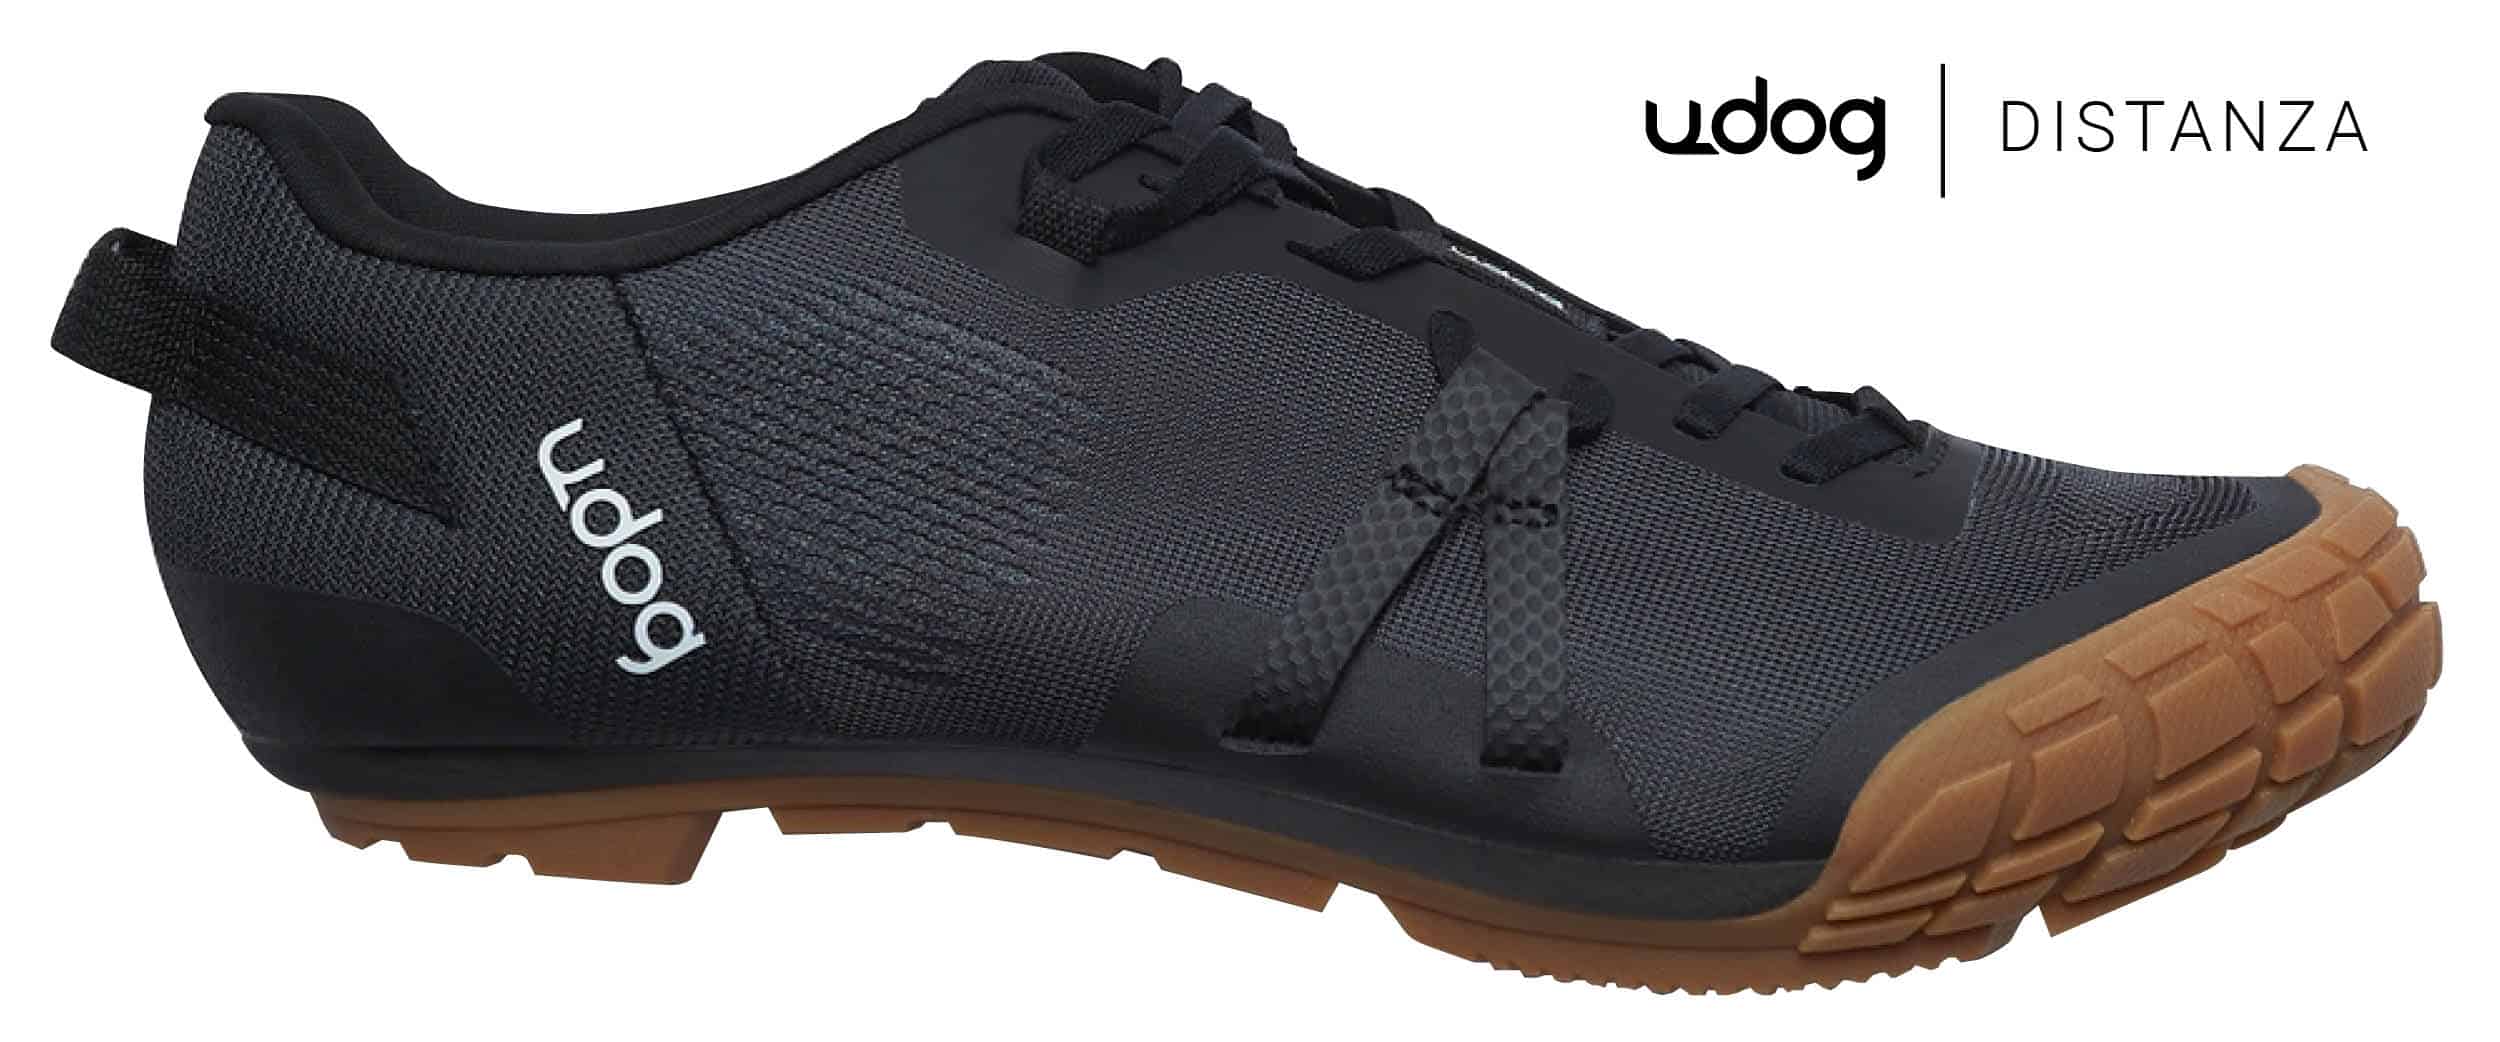 Chaussures de gravel Udog Distanza : Pas une mauvaise première tentative,  mais un peu trop d'erreurs à notre goût